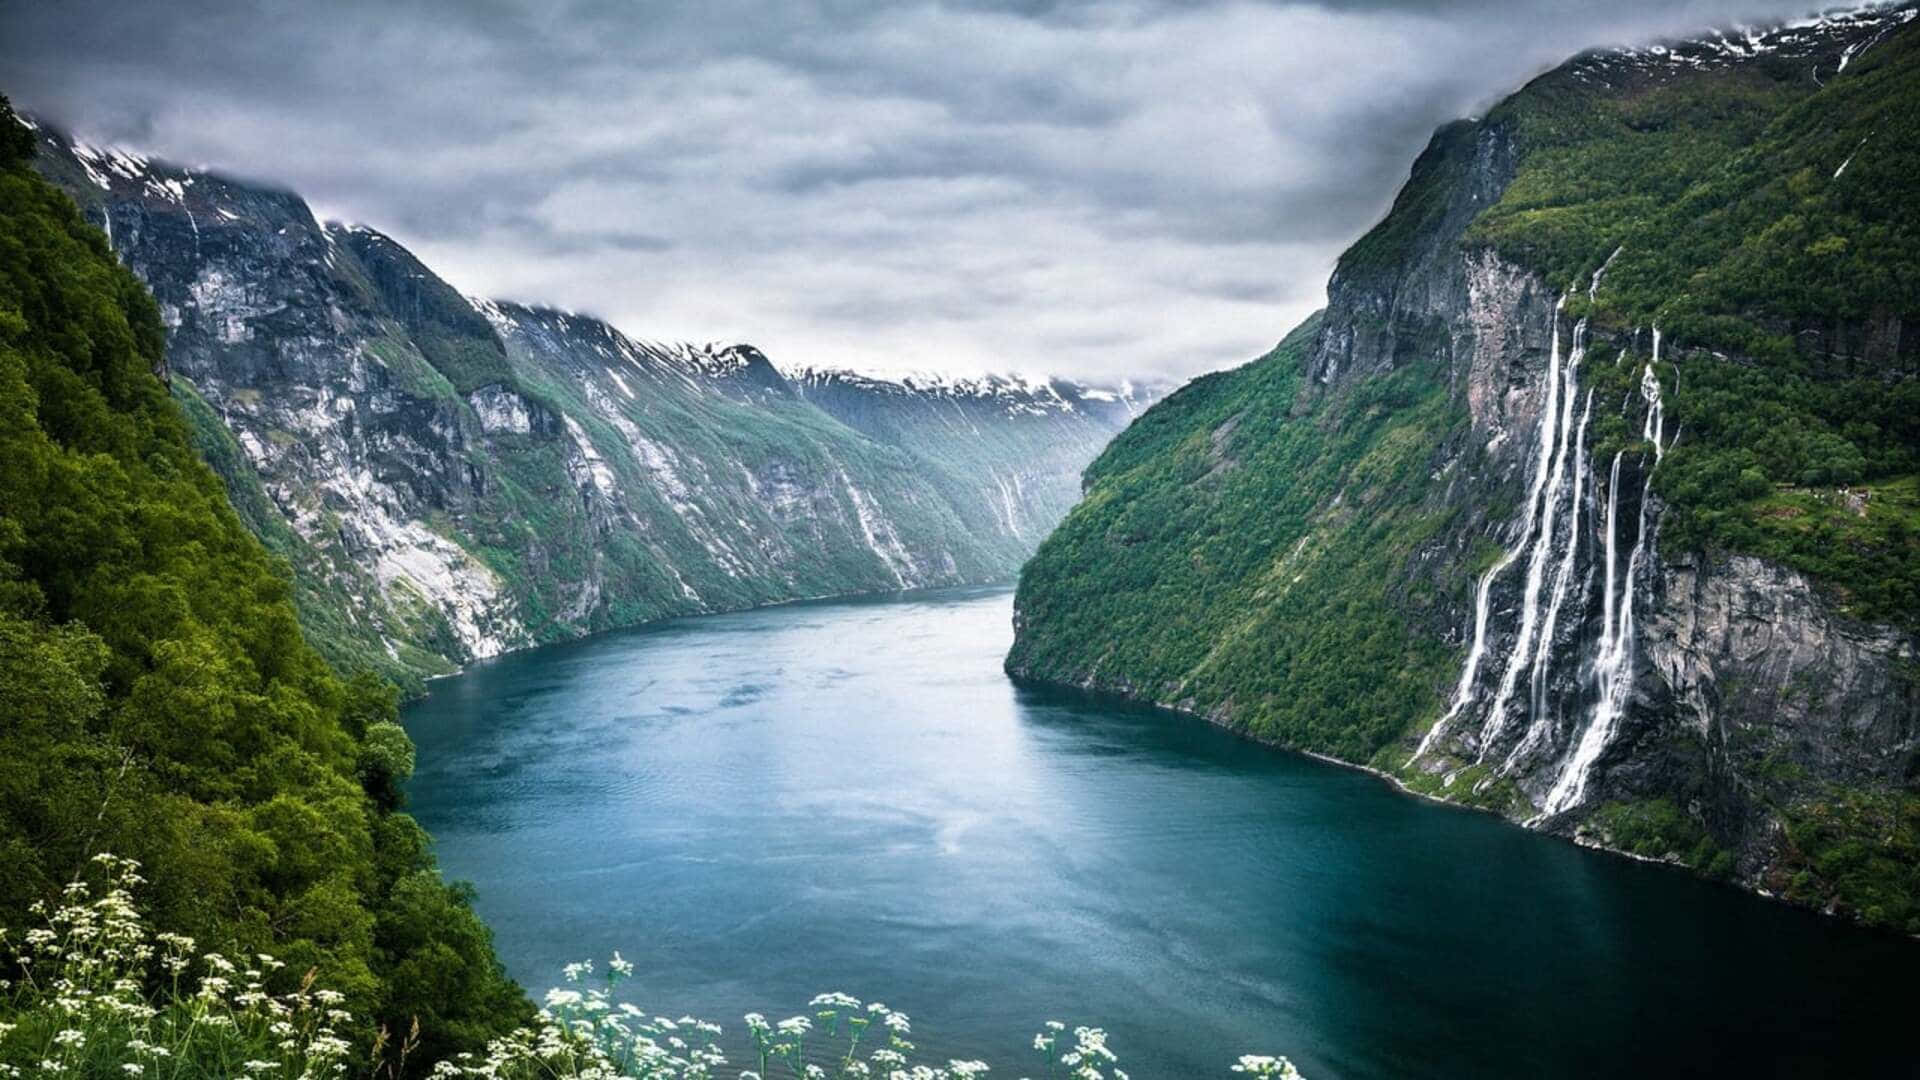 Fondode Pantalla De Naturaleza En 1080p Del Fiordo Geiranger En Noruega.